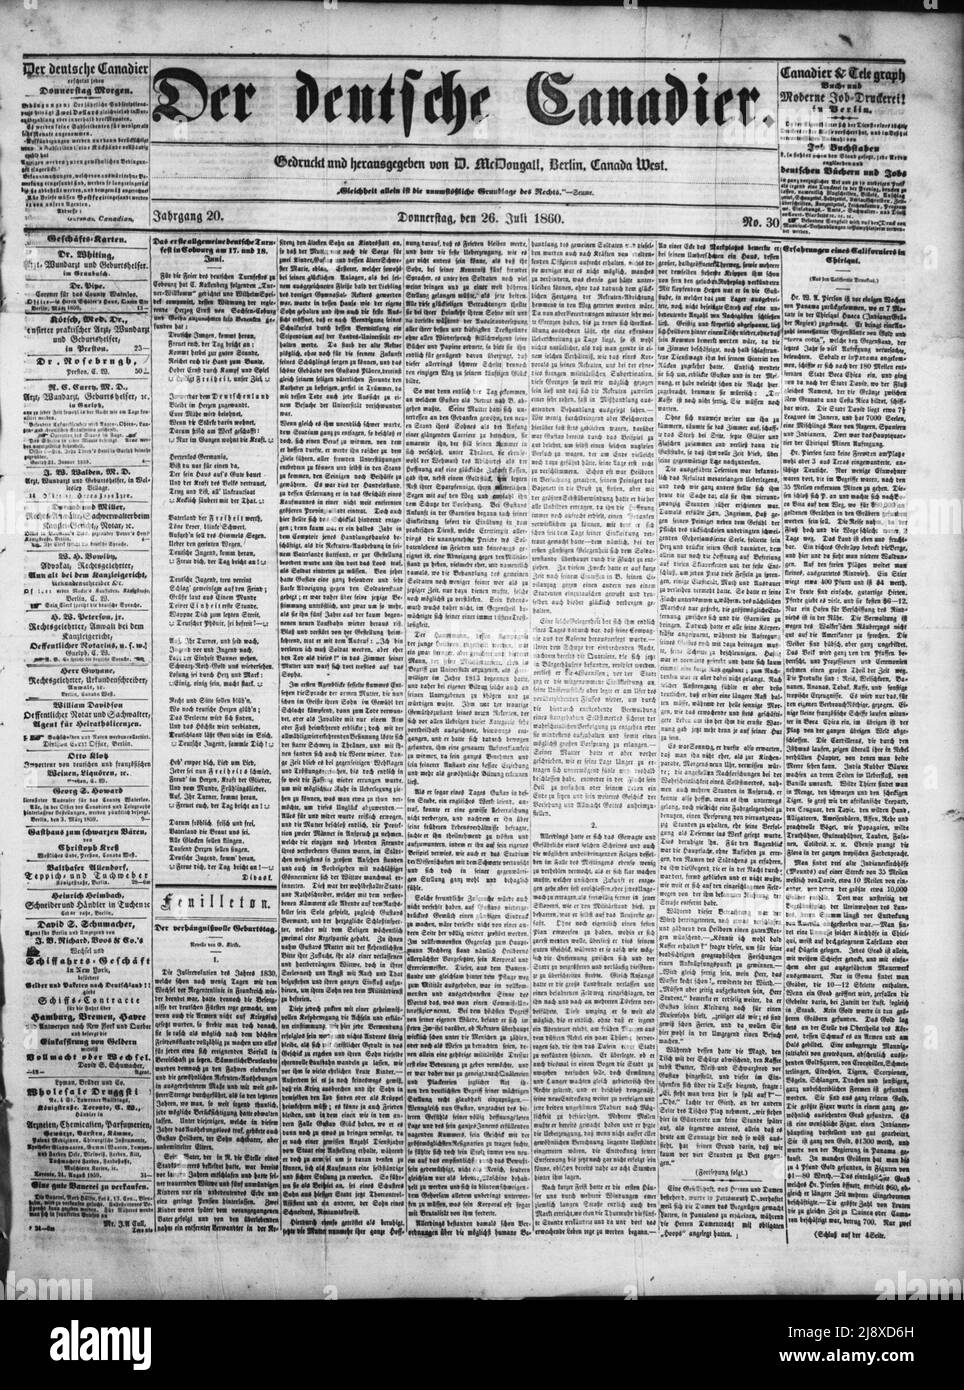 Der Deutsche Canadier newspaper front page 26 July 1860 Stock Photo